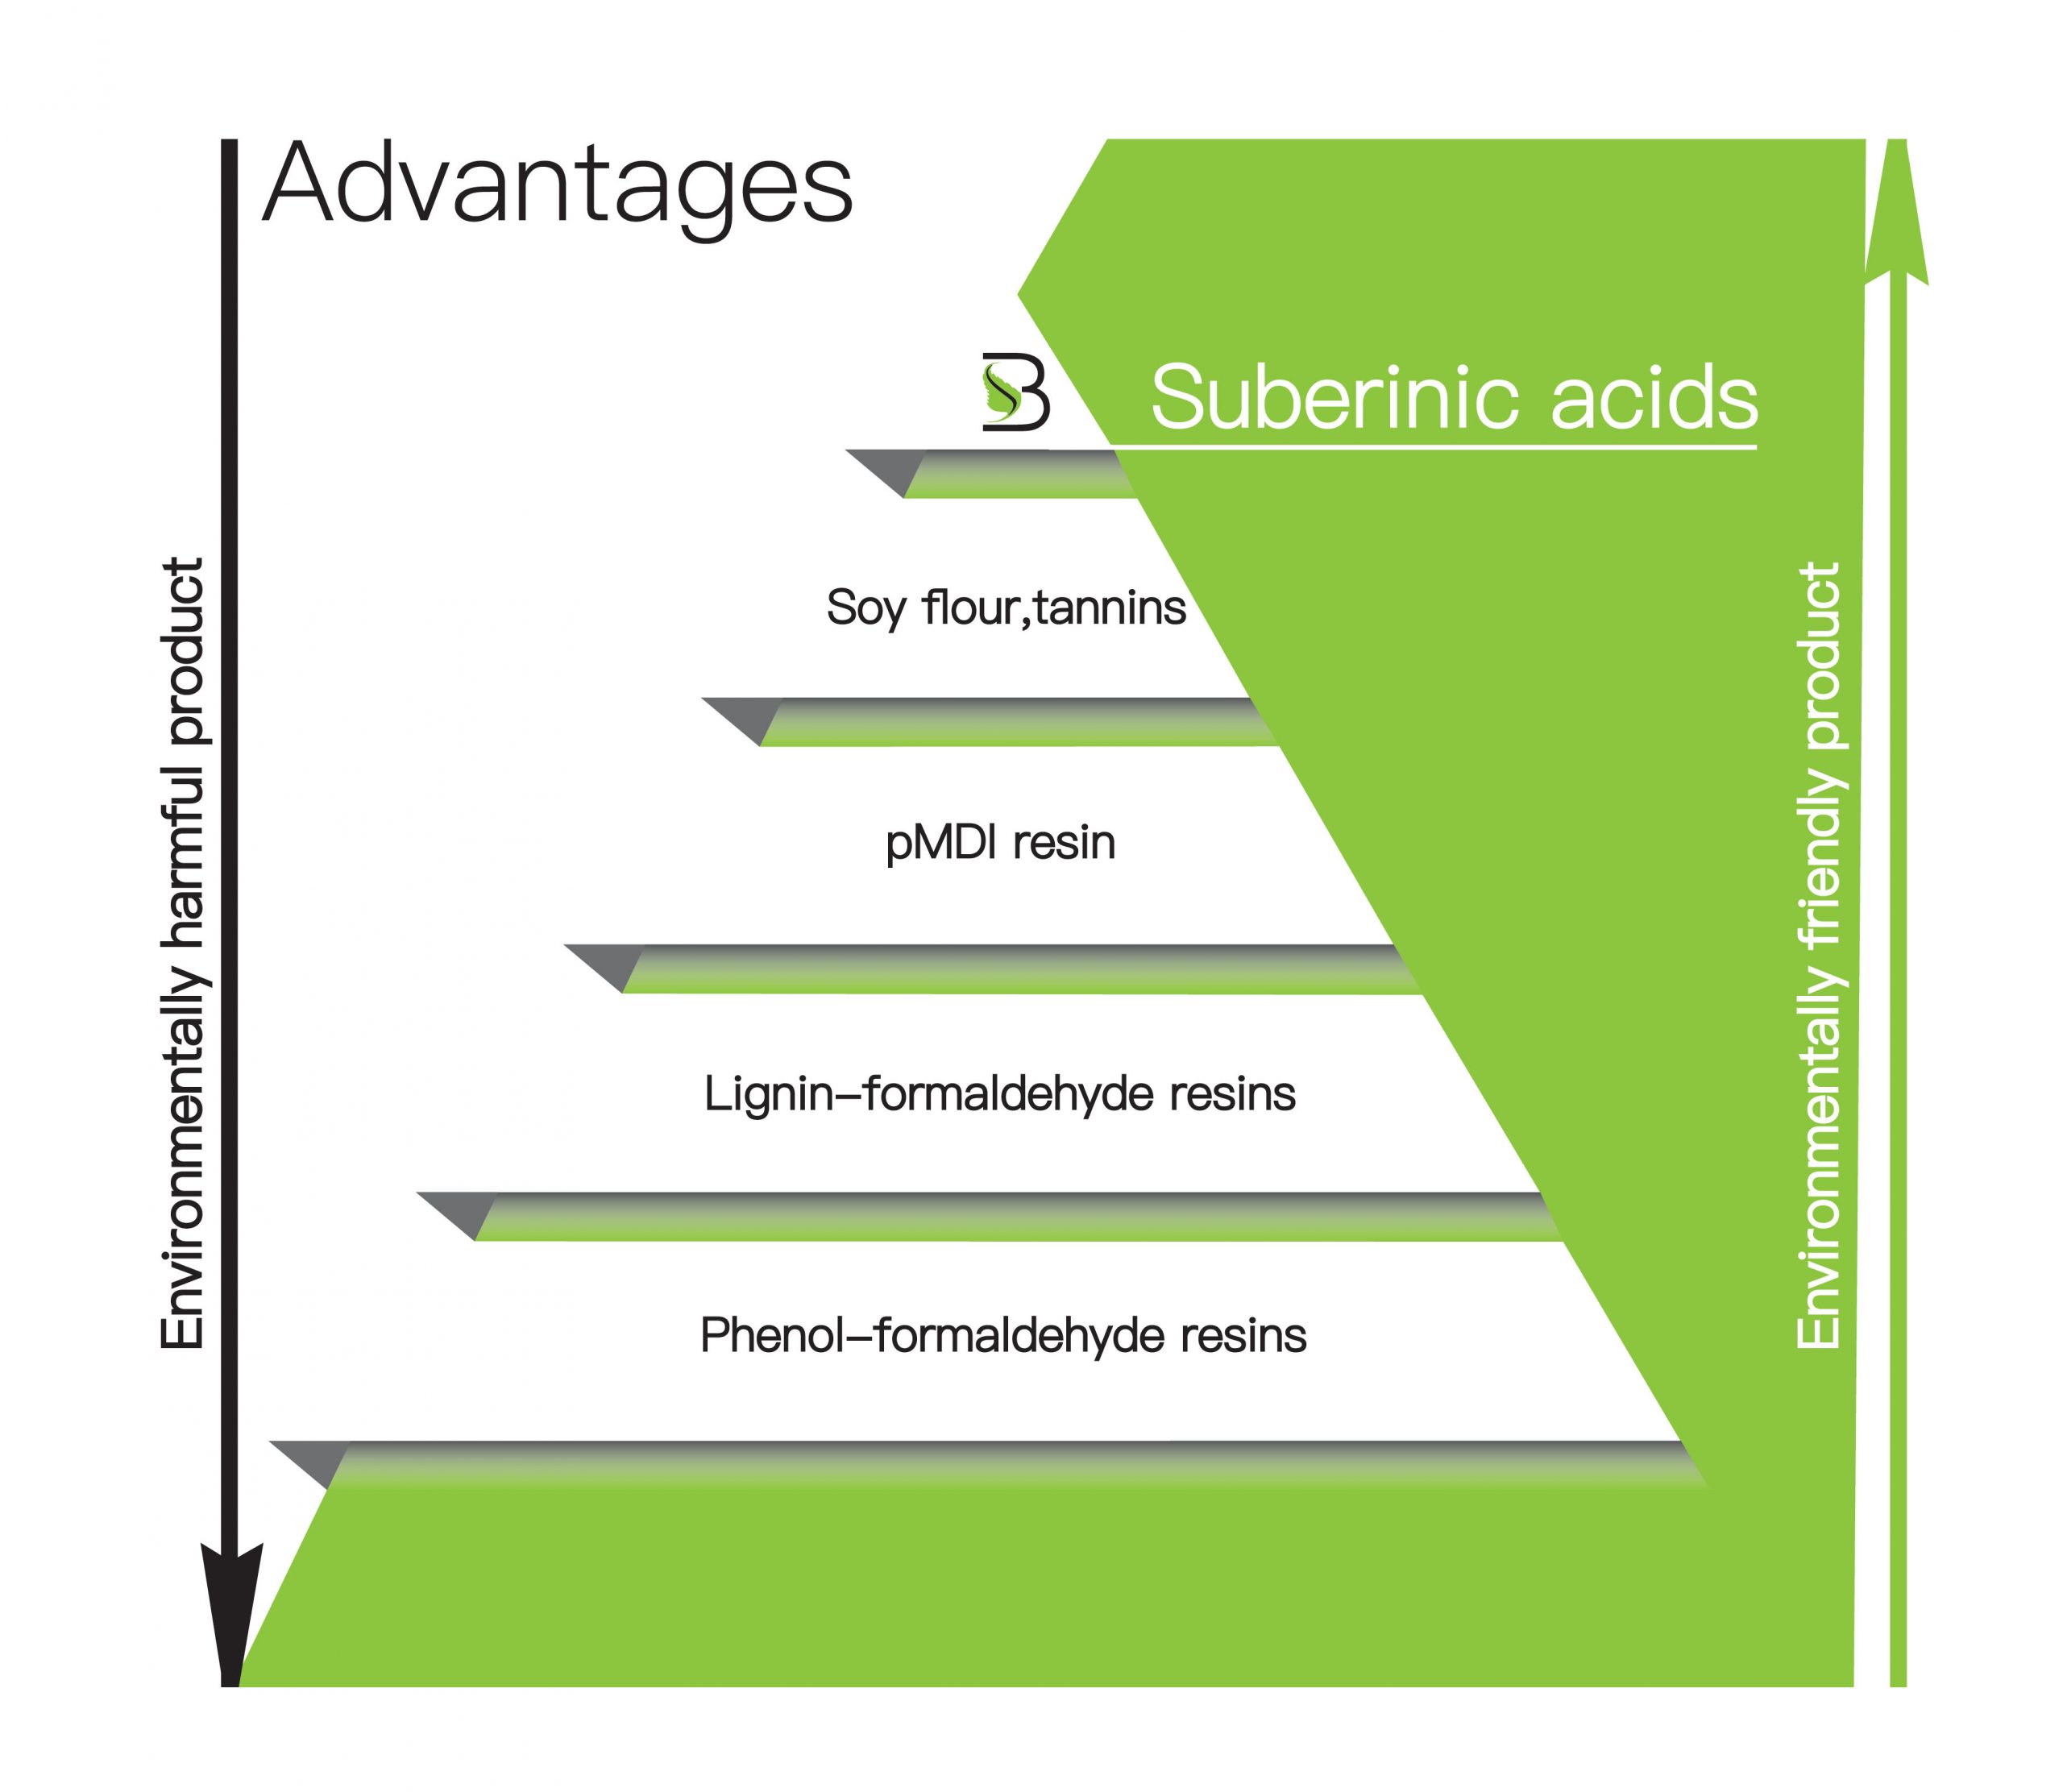 Advantages of Suberinic acids - Suberbinder